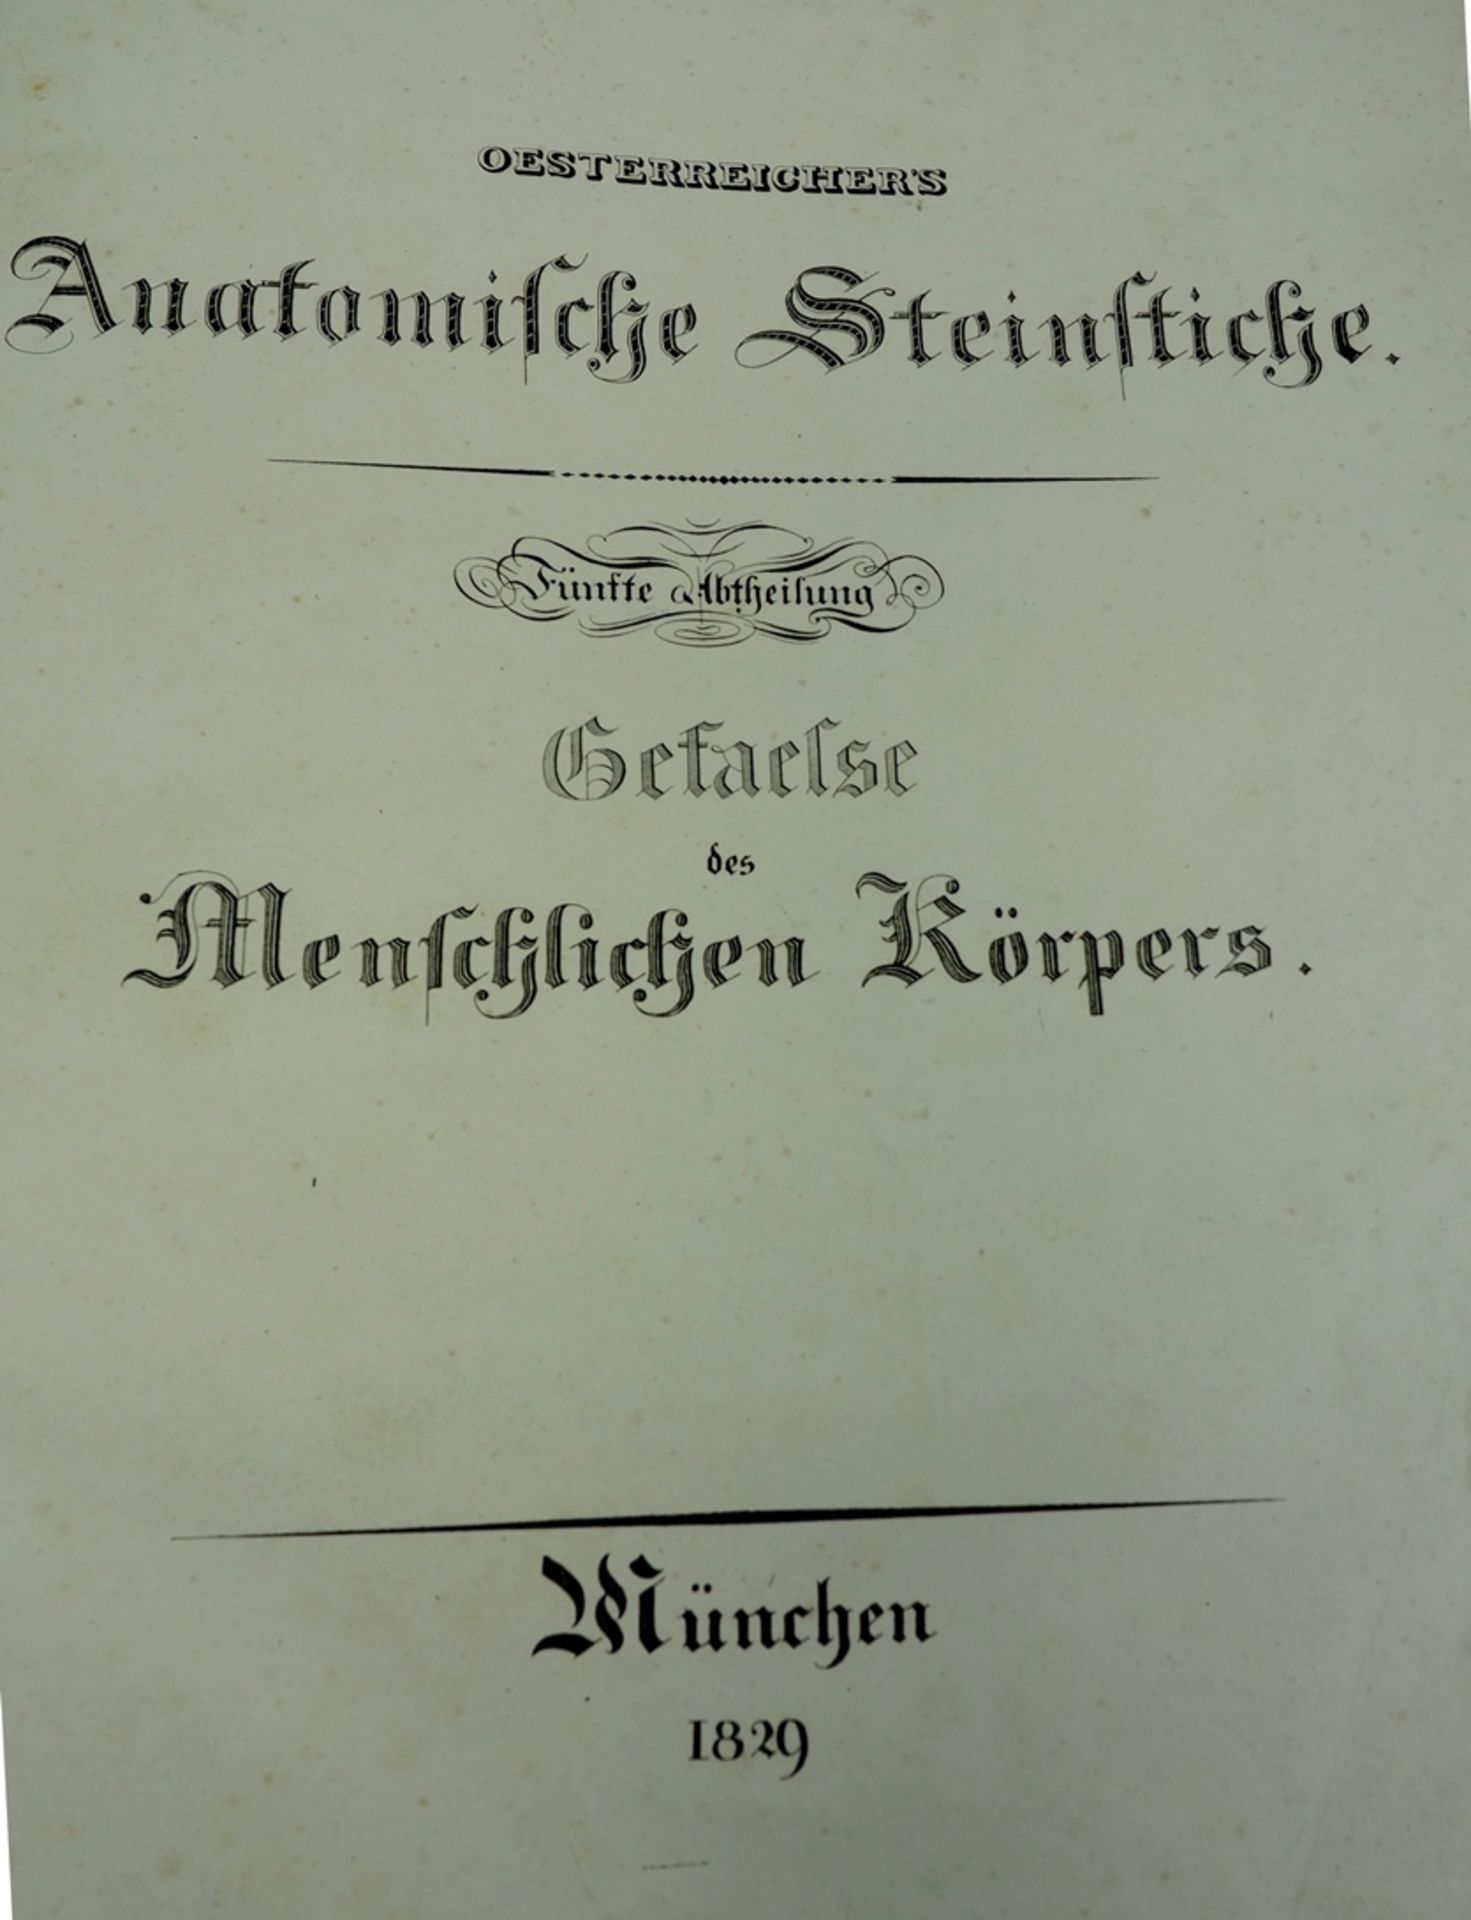 Oesterreicher, München: 'Anatomische Steinstiche'. 